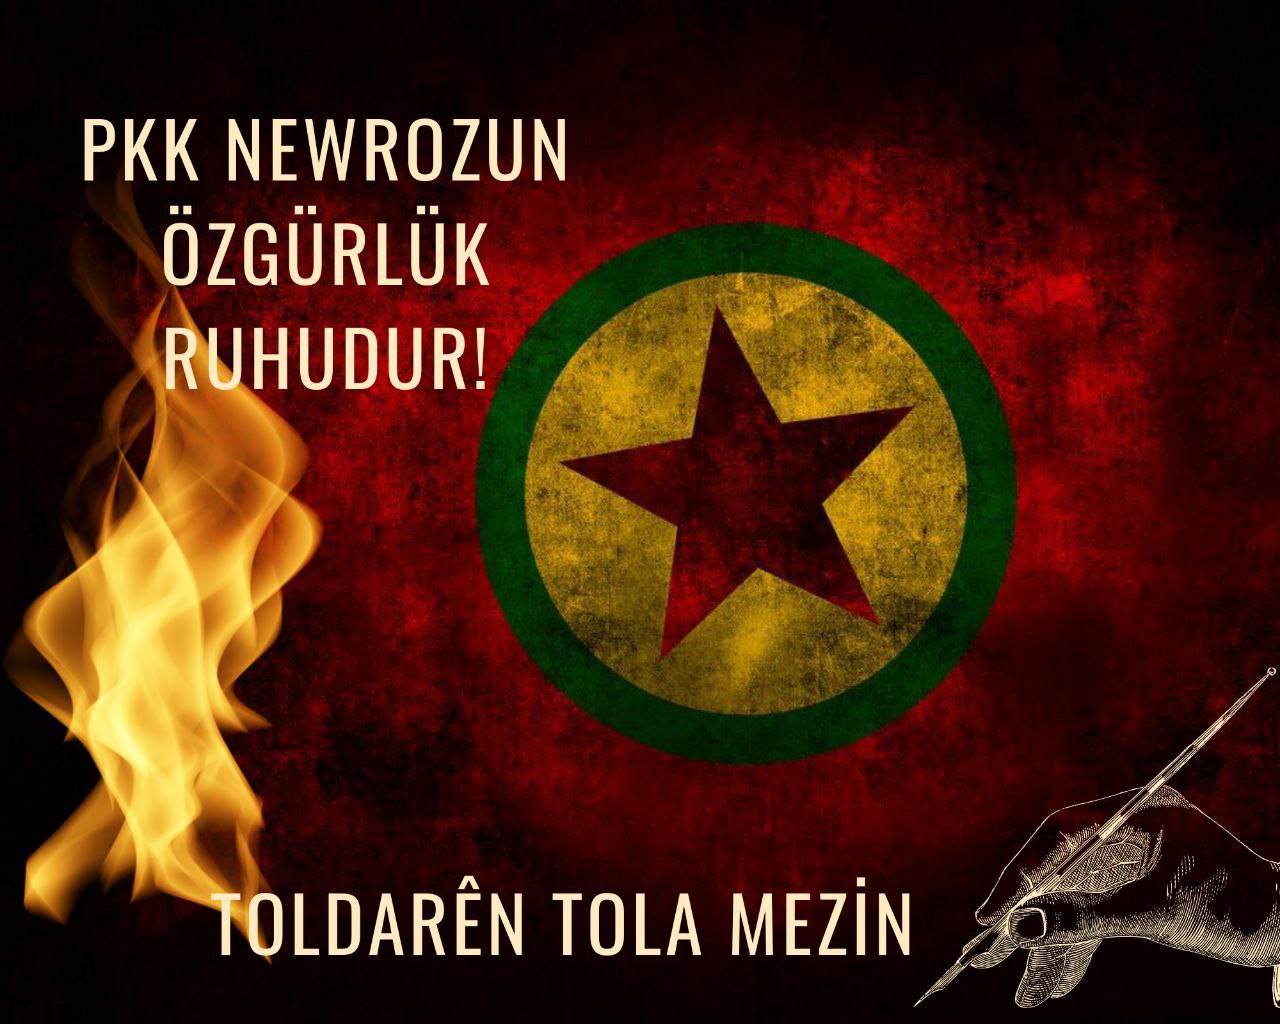 PKK NEWROZUN ÖZGÜRLÜK RUHUDUR!